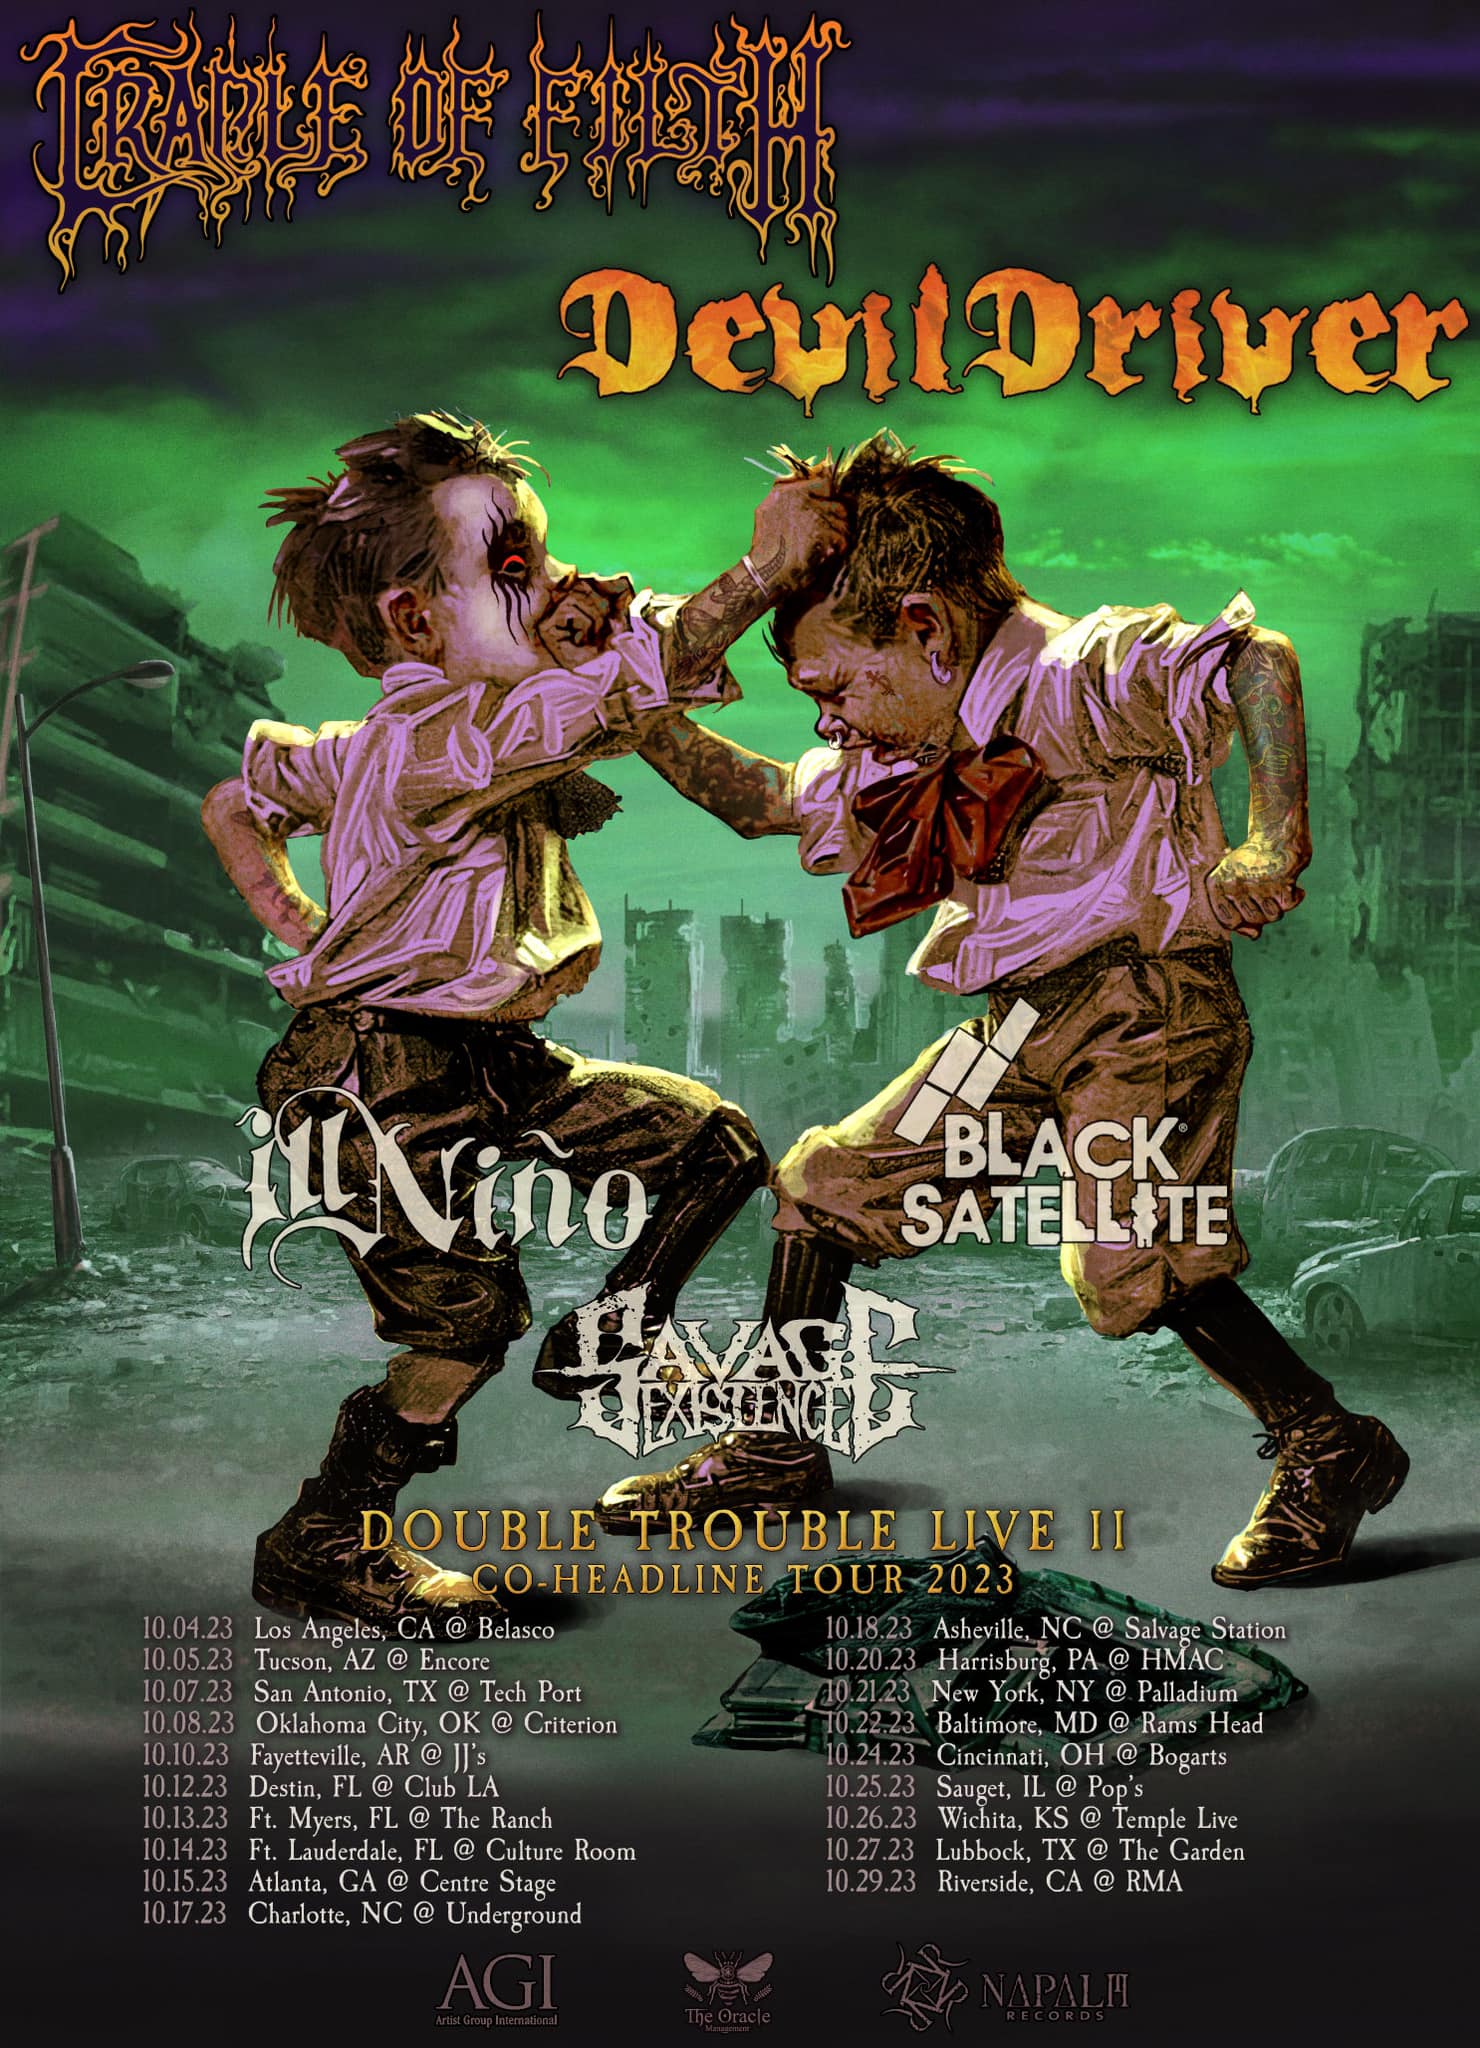 DevilDriver tour dates.